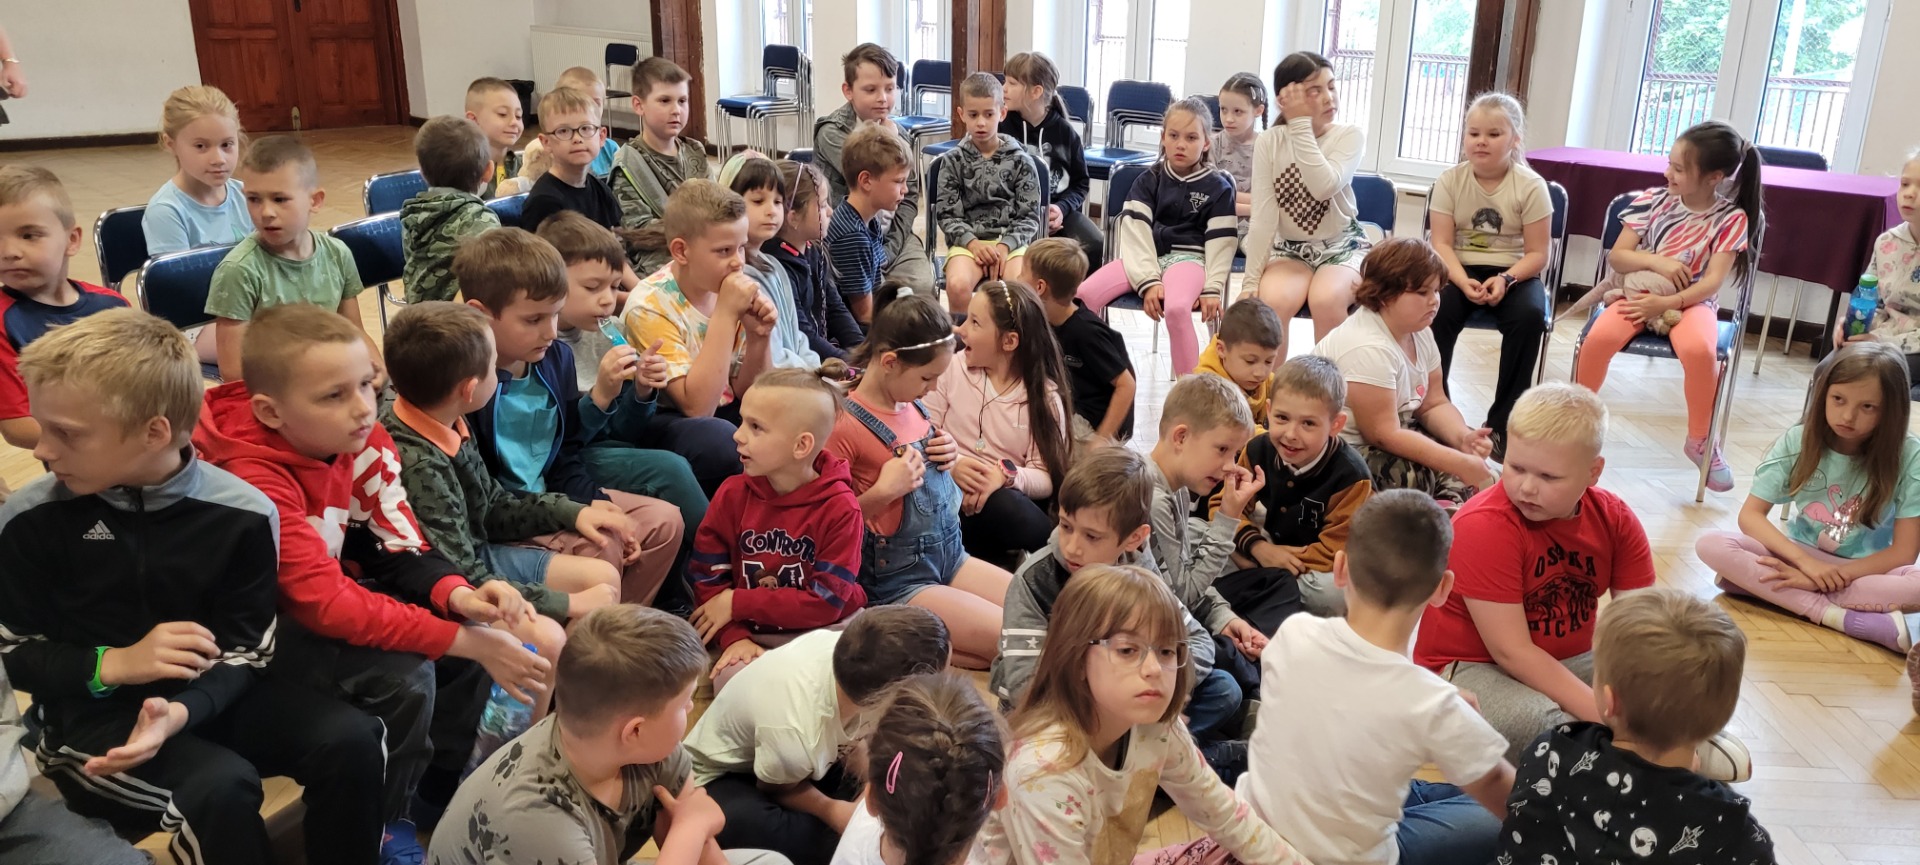 Uczniowie podczas słuchania baśni